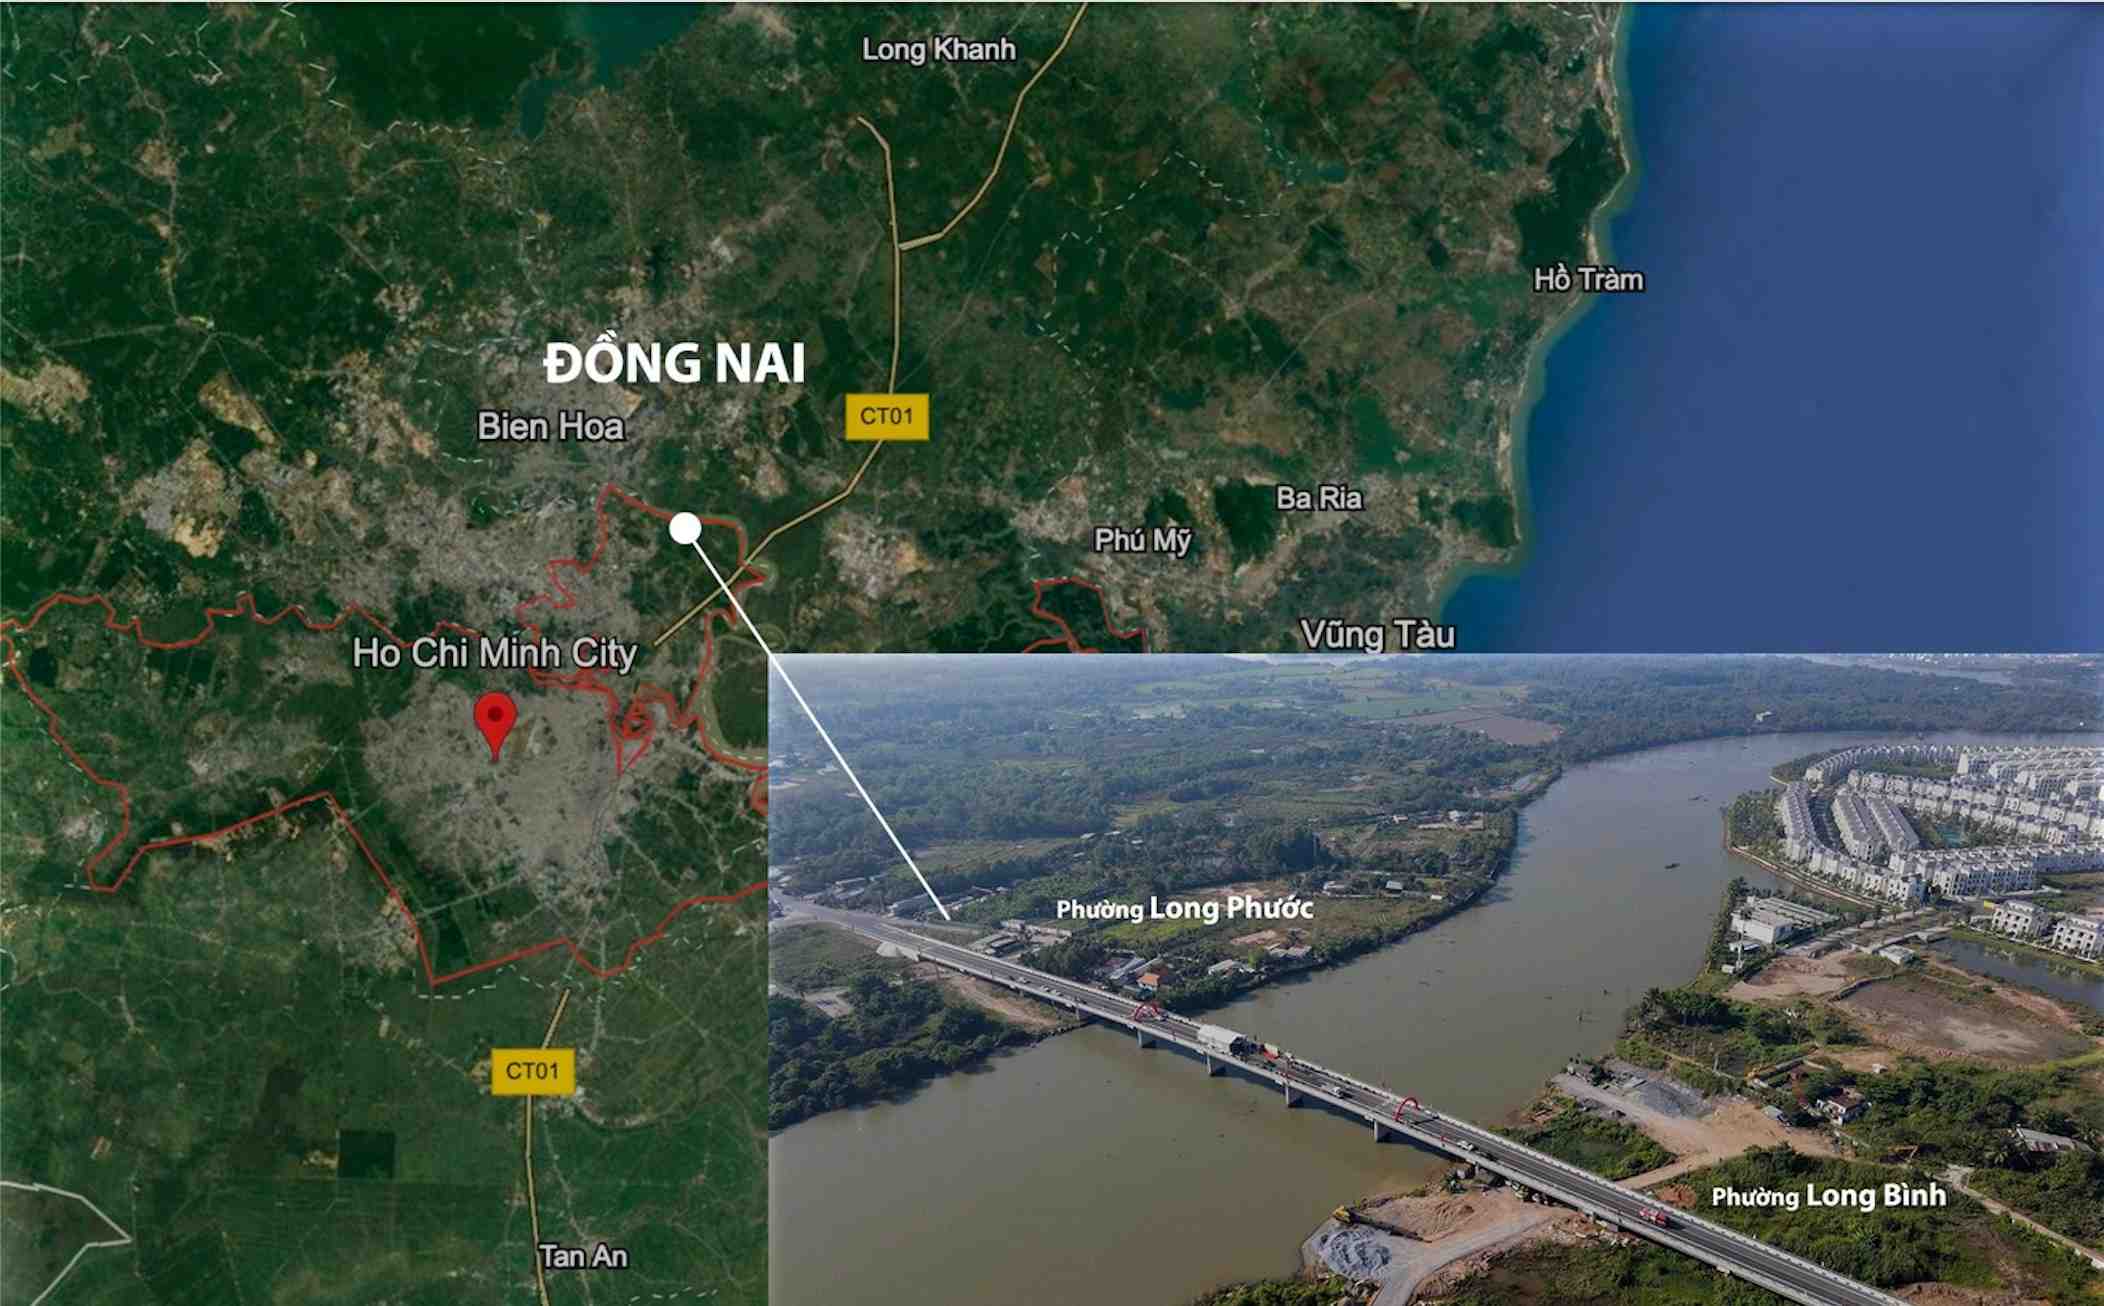 Thông xe Cầu Long Đại, Thủ Đức - TP.HCM, Loạt dự án BĐS hưởng lợi